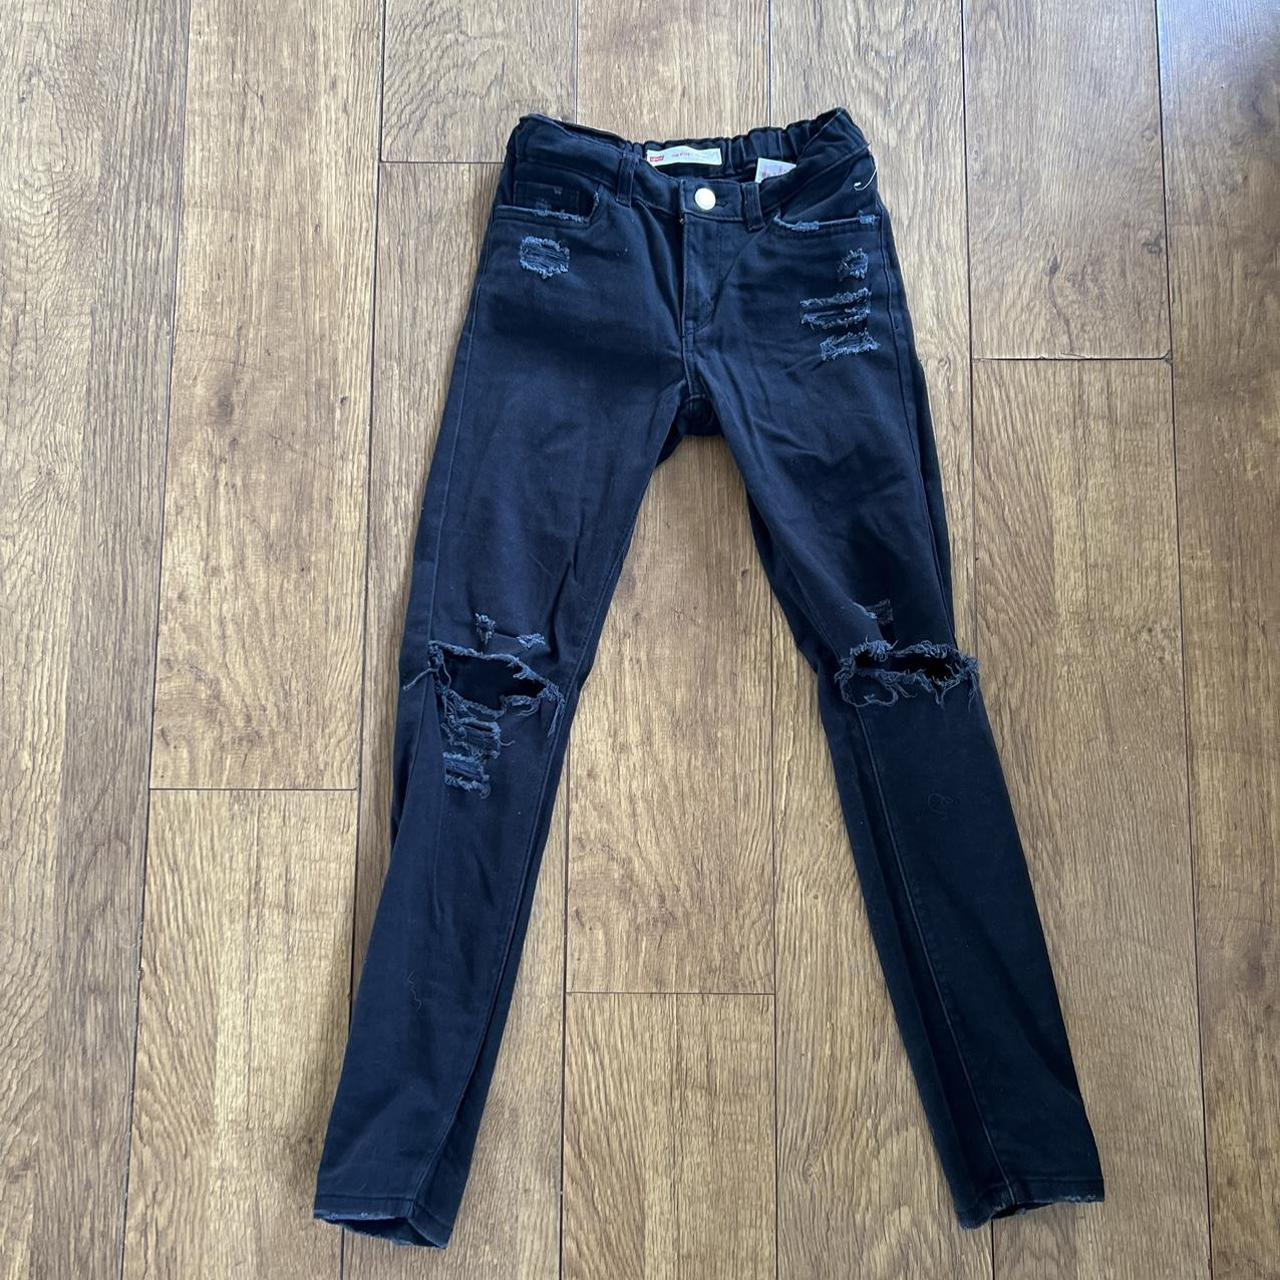 Levis 710 super skinny black ripped jeans - Depop